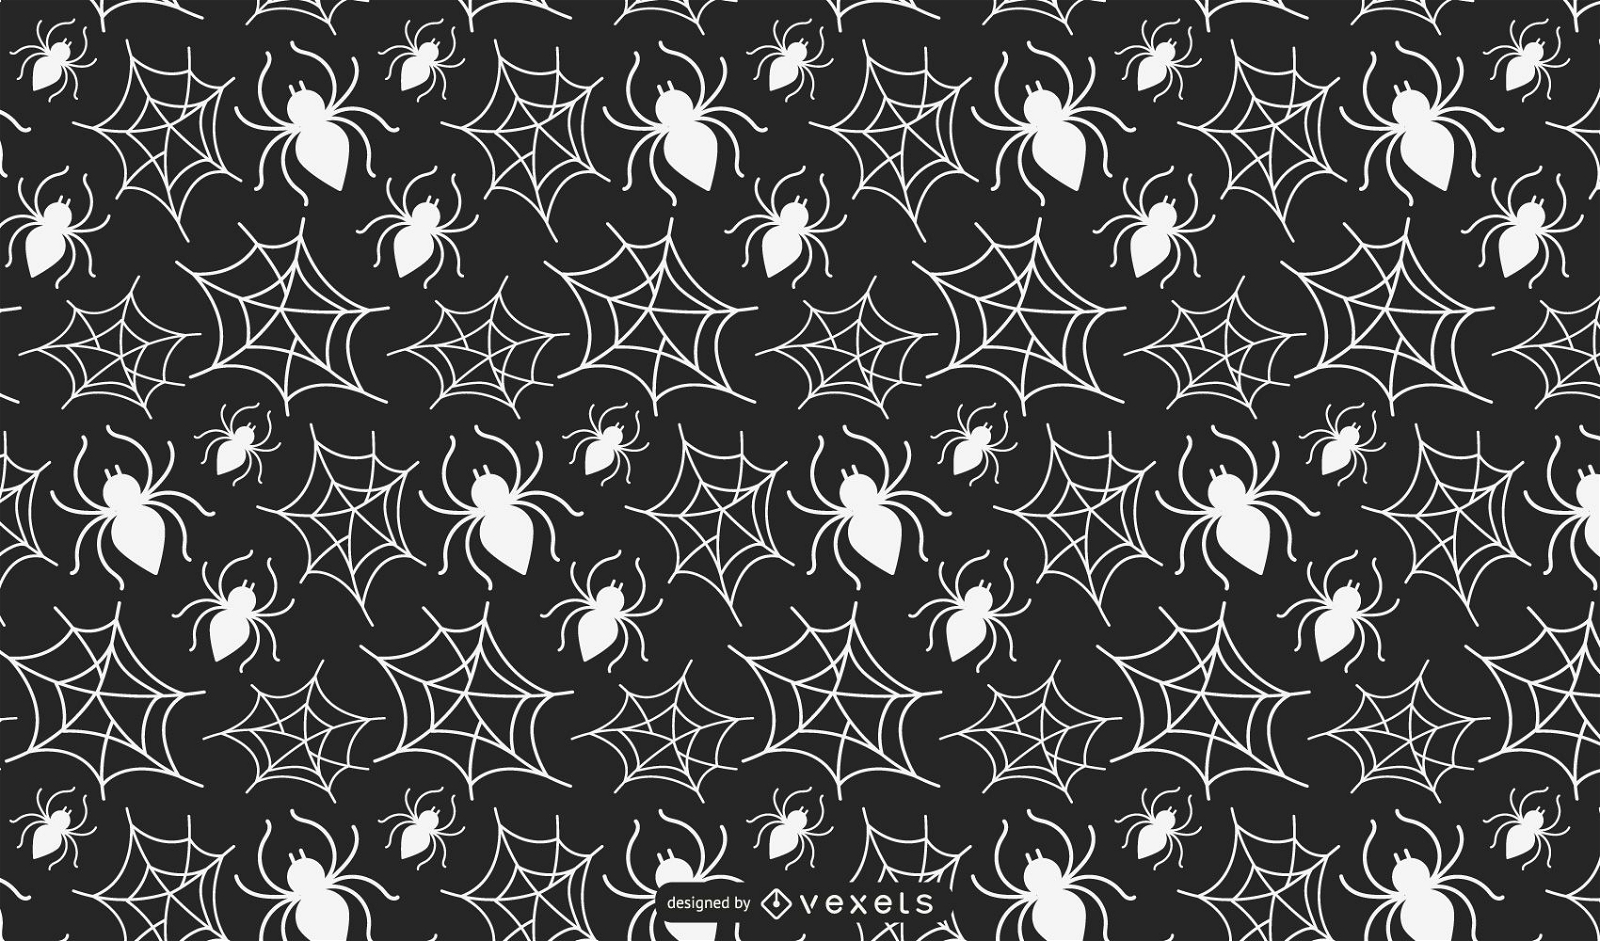 spider web background patterns